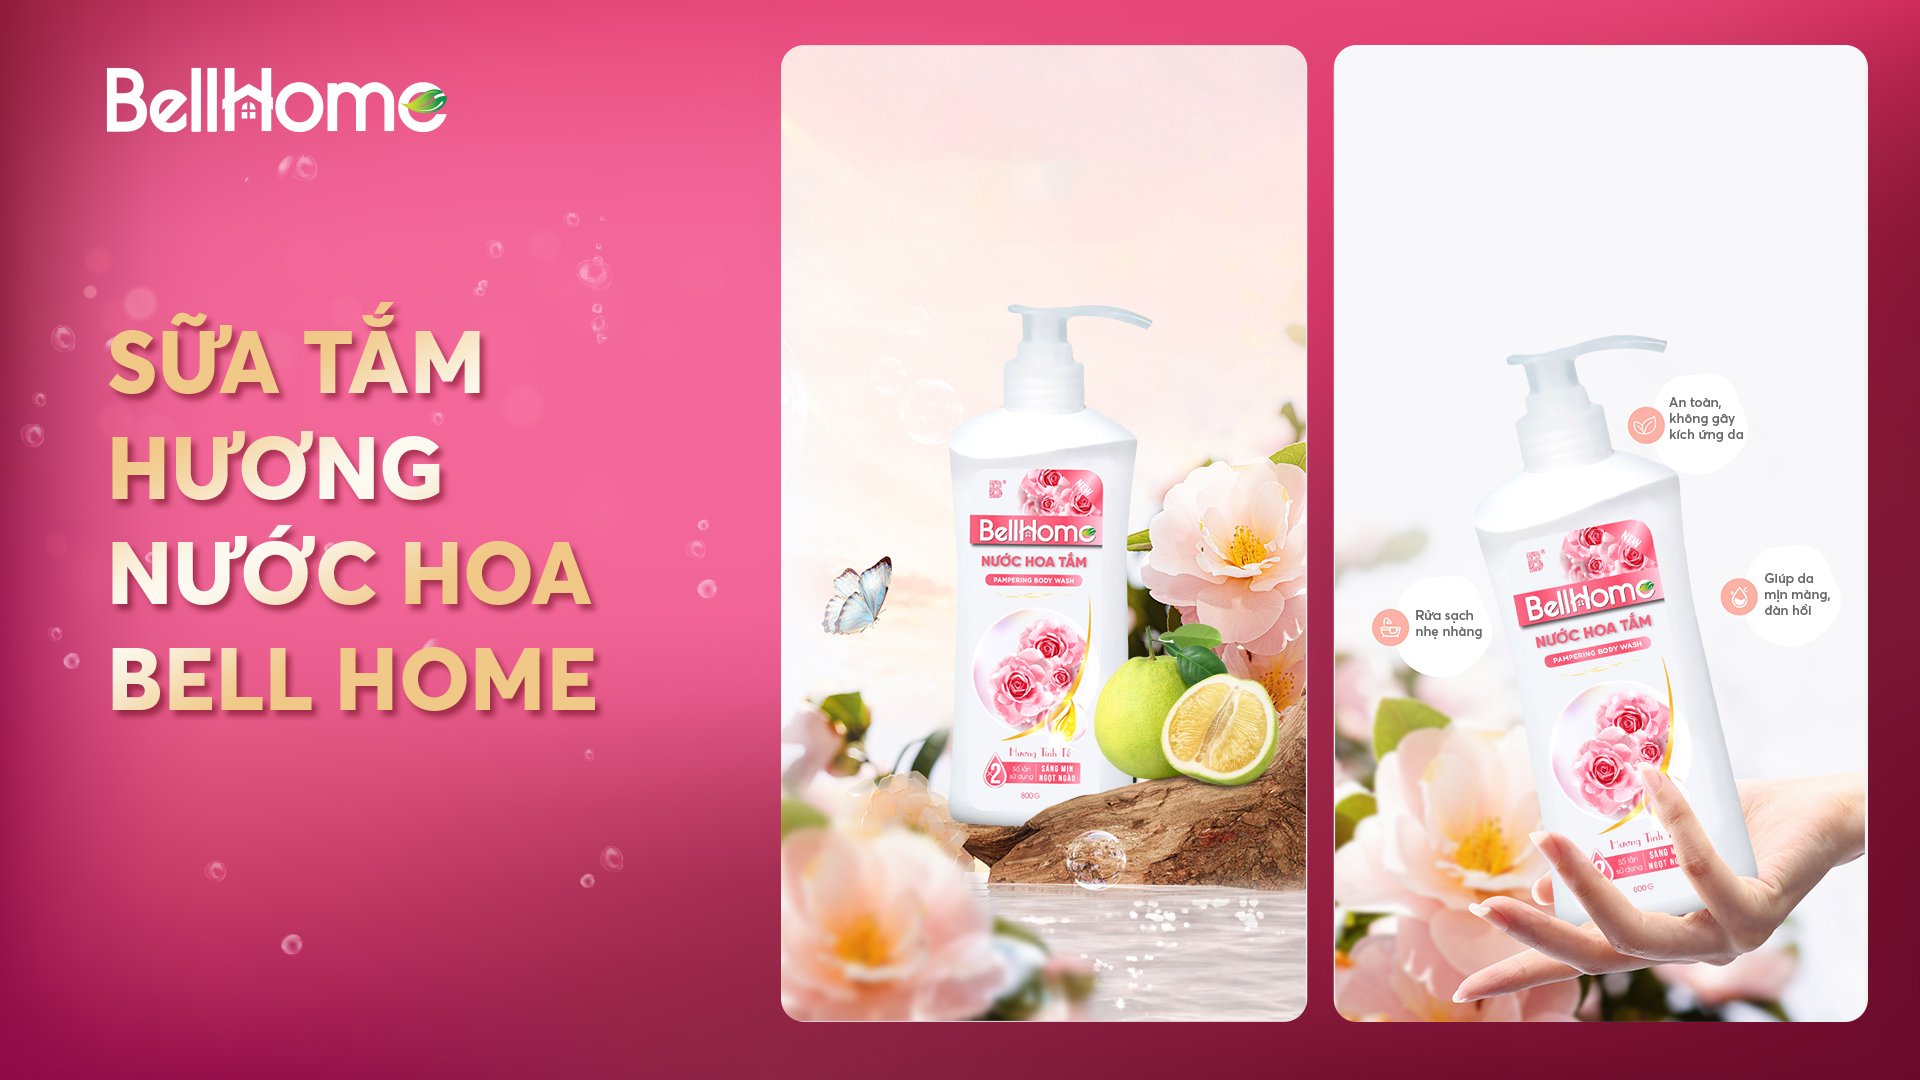 Nước hoa tắm Bell Home đến từ thương hiệu sản xuất nước hoa nổi tiếng